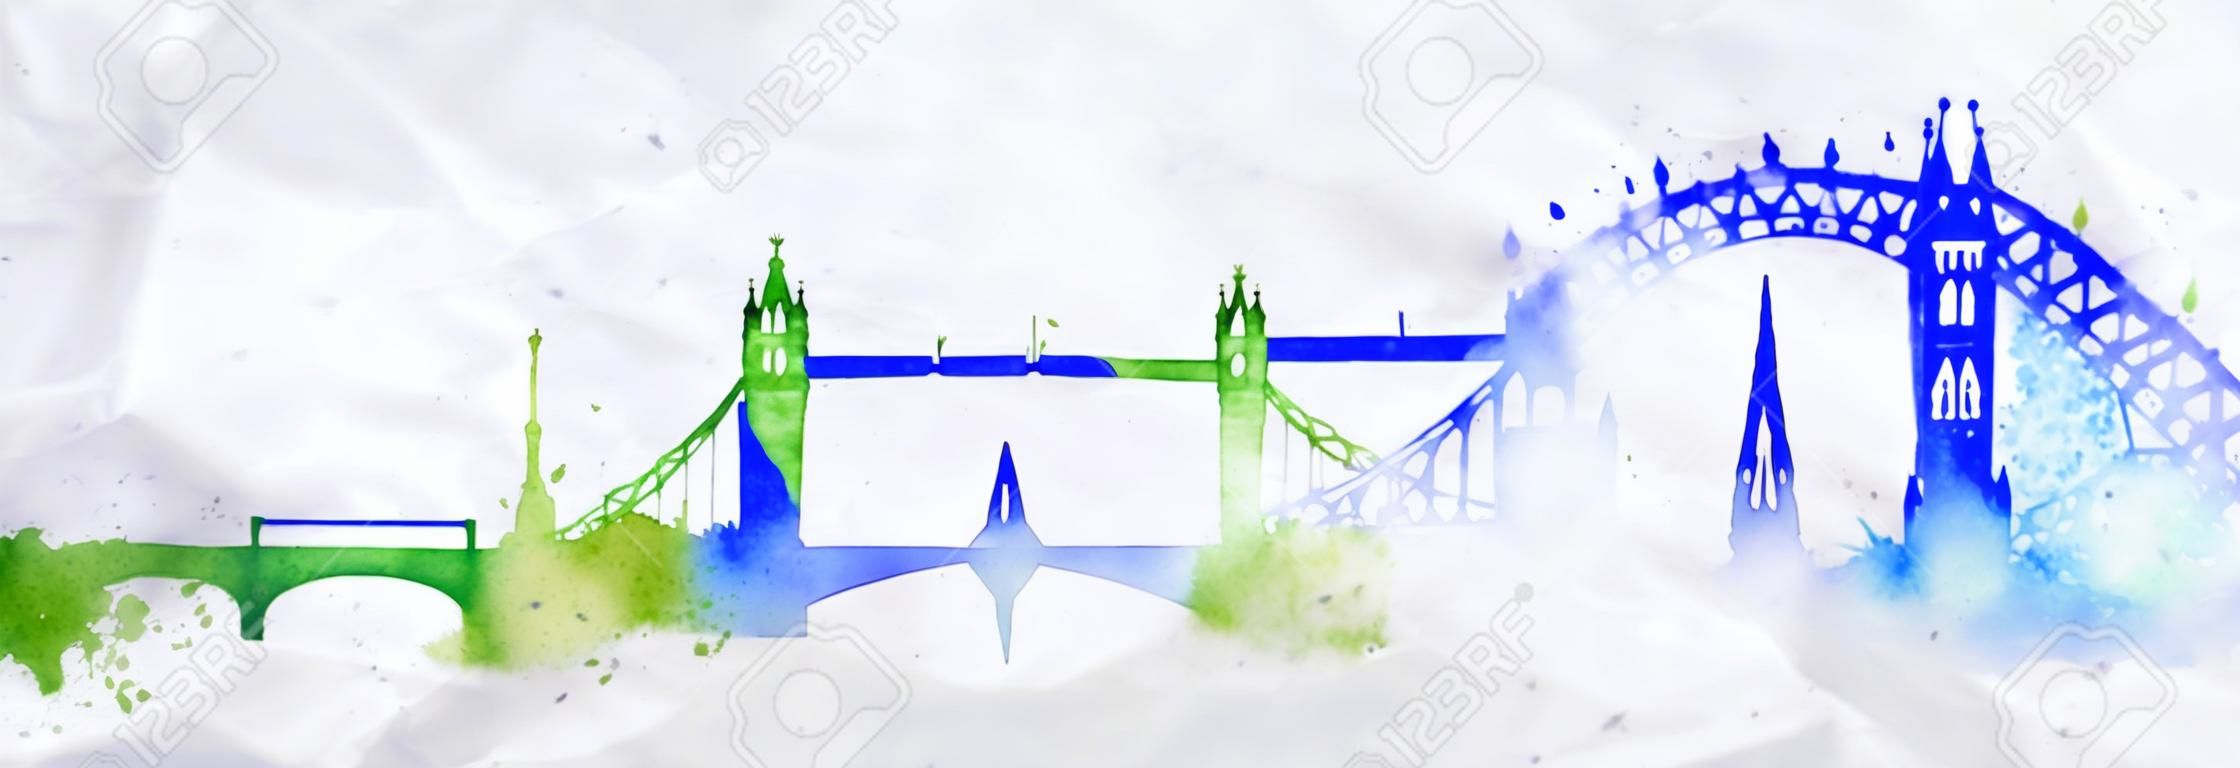 水彩画の水しぶきで描かれたシルエット ロンドン市滴青緑色と縞のランドマーク